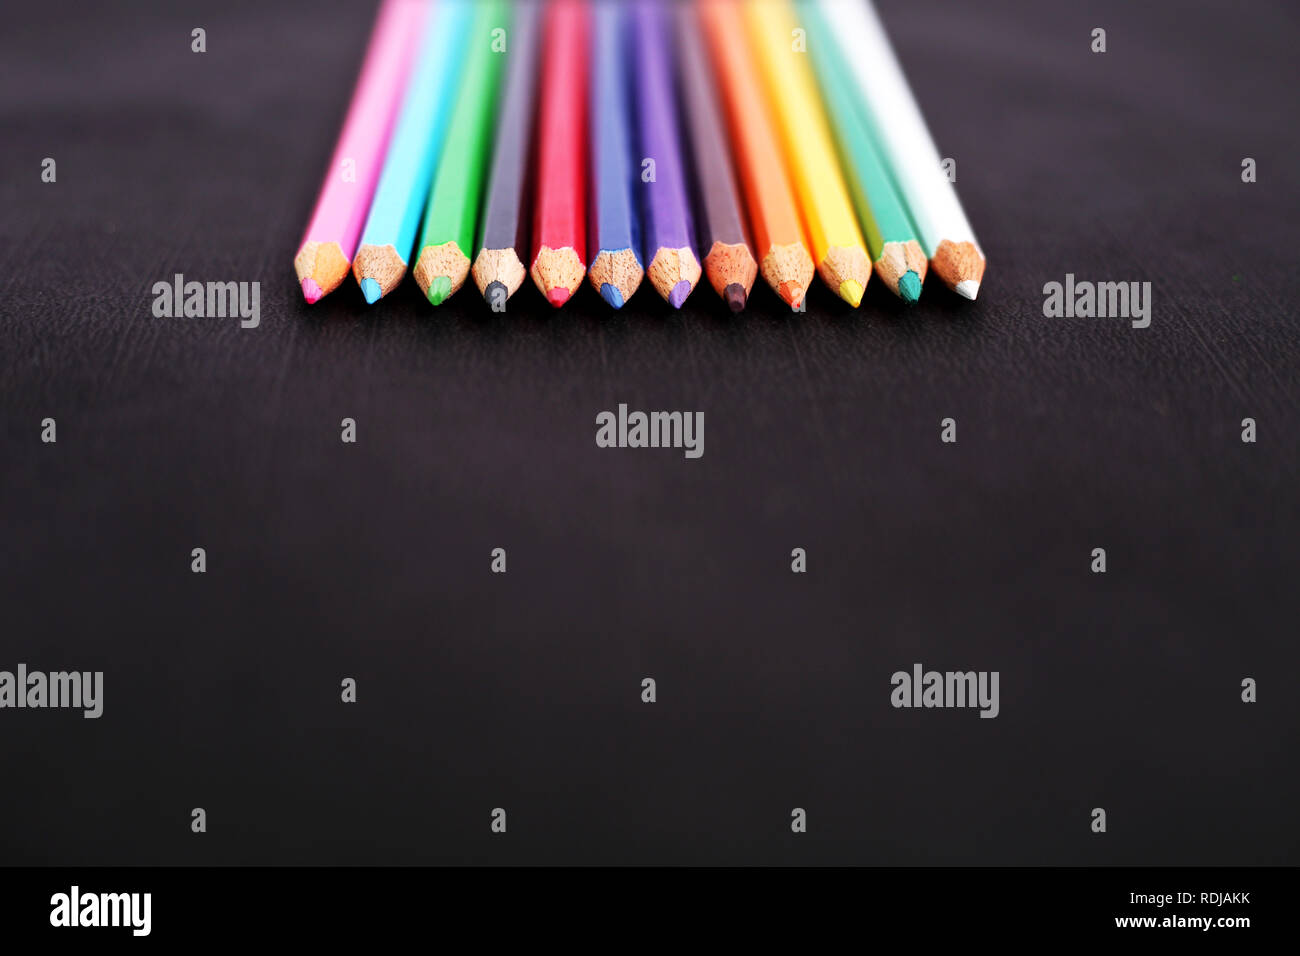 Matita arcobaleno immagini e fotografie stock ad alta risoluzione - Alamy